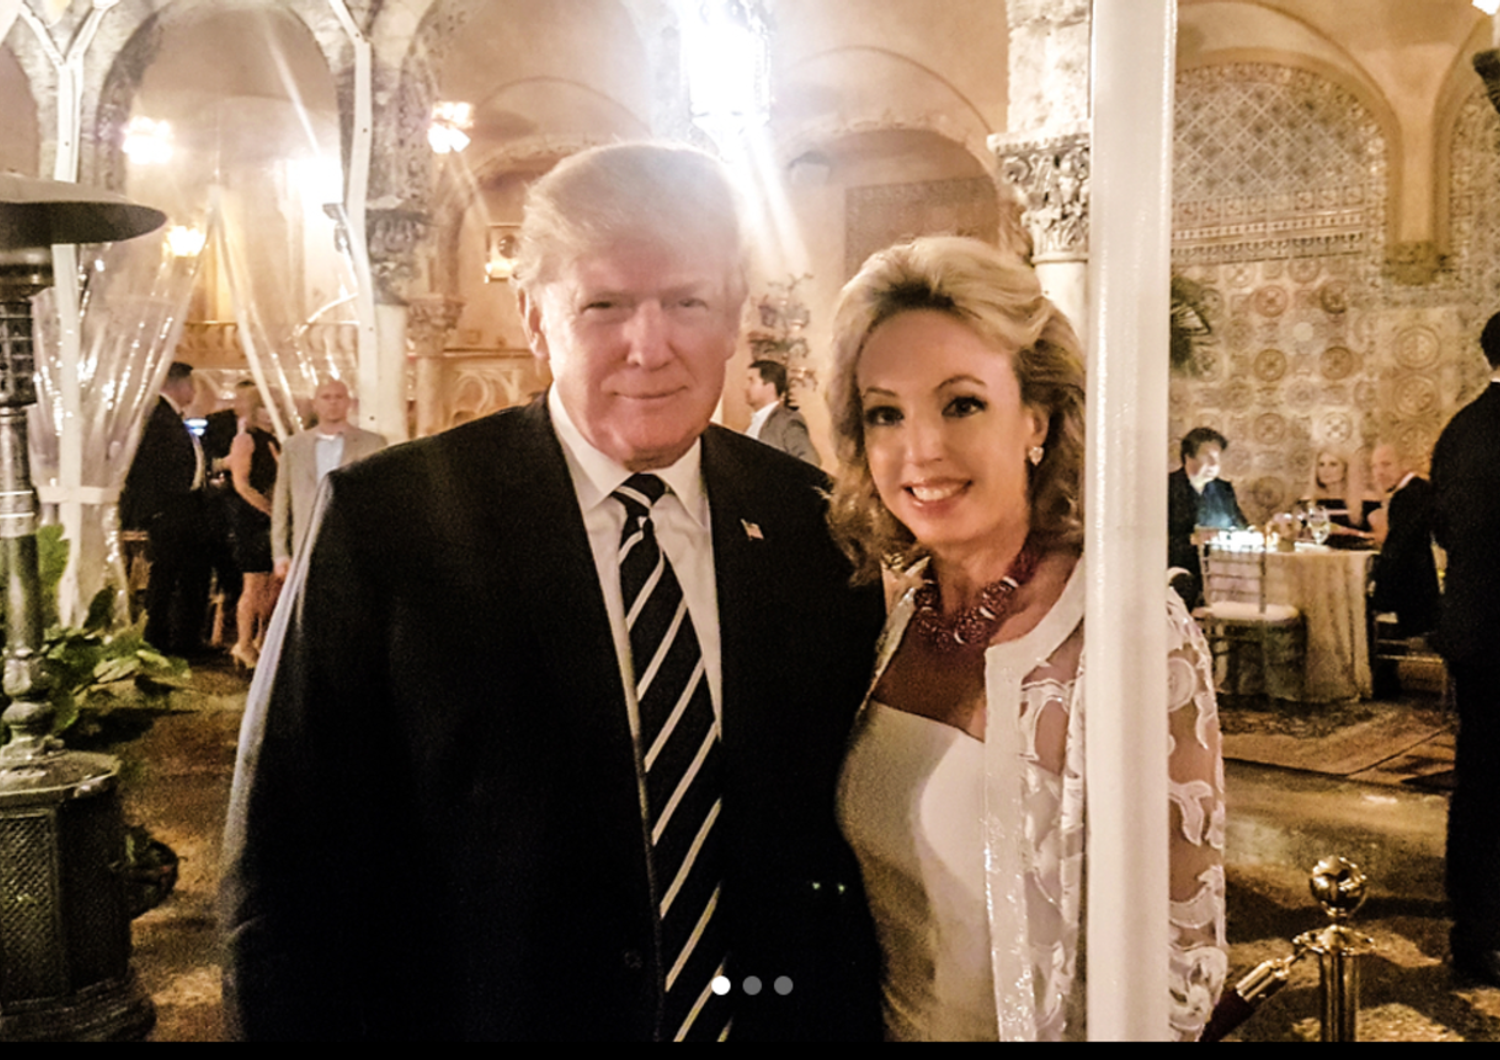 &nbsp;Camilla di Borbone con Donald Trump